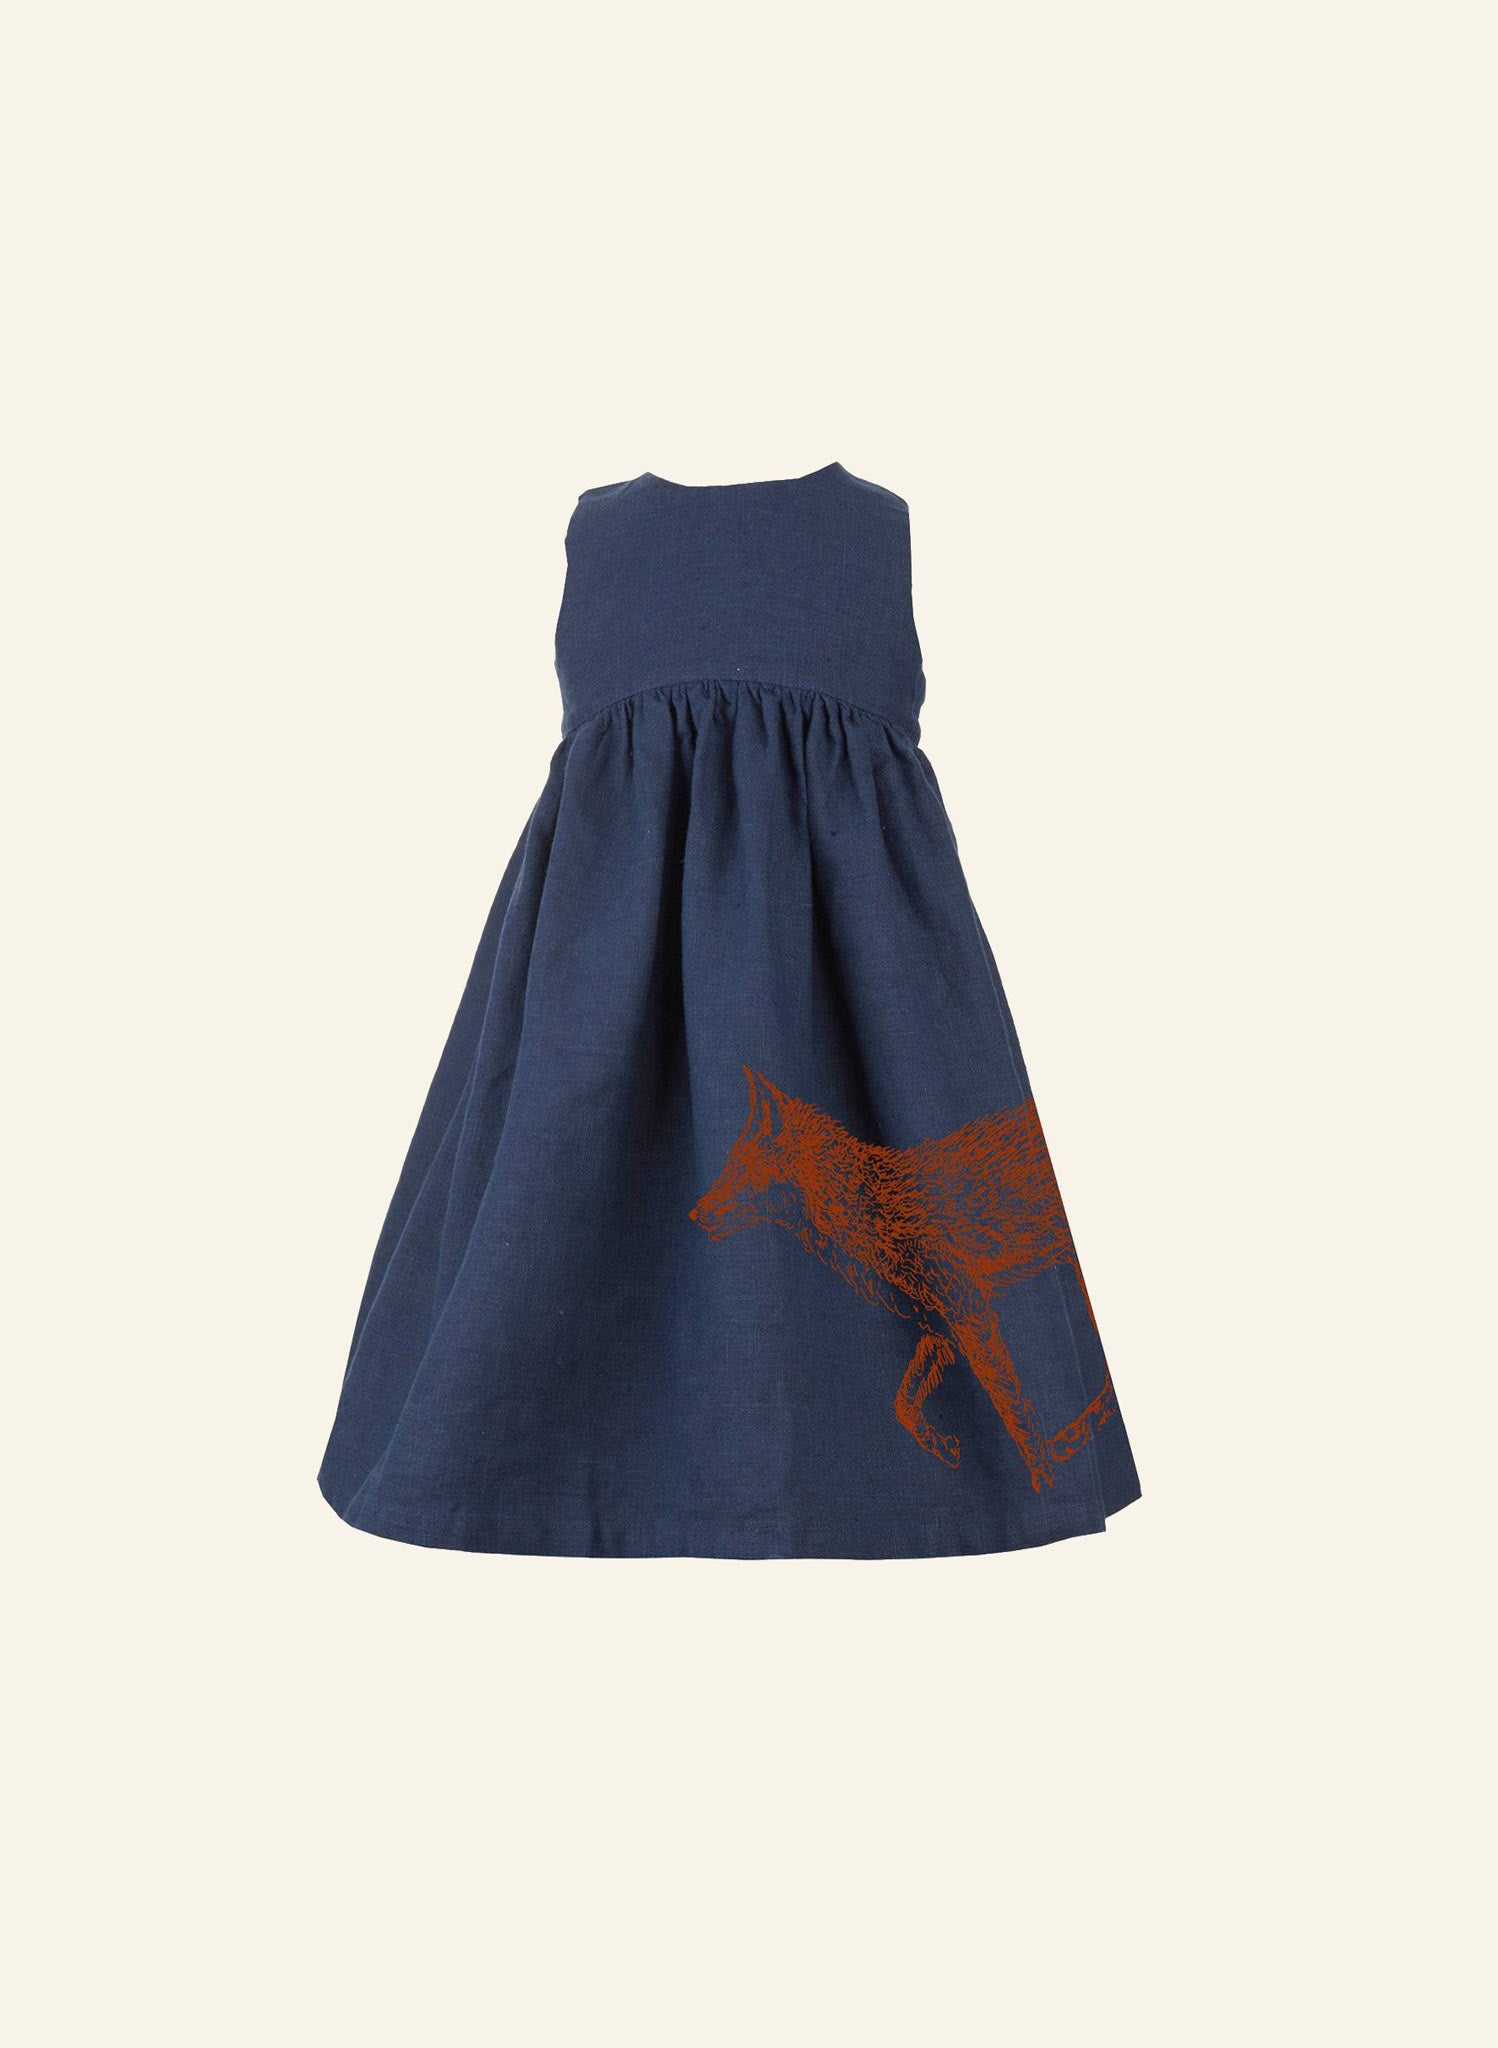 Rosie - Navy Fox Children's Dress | Linen